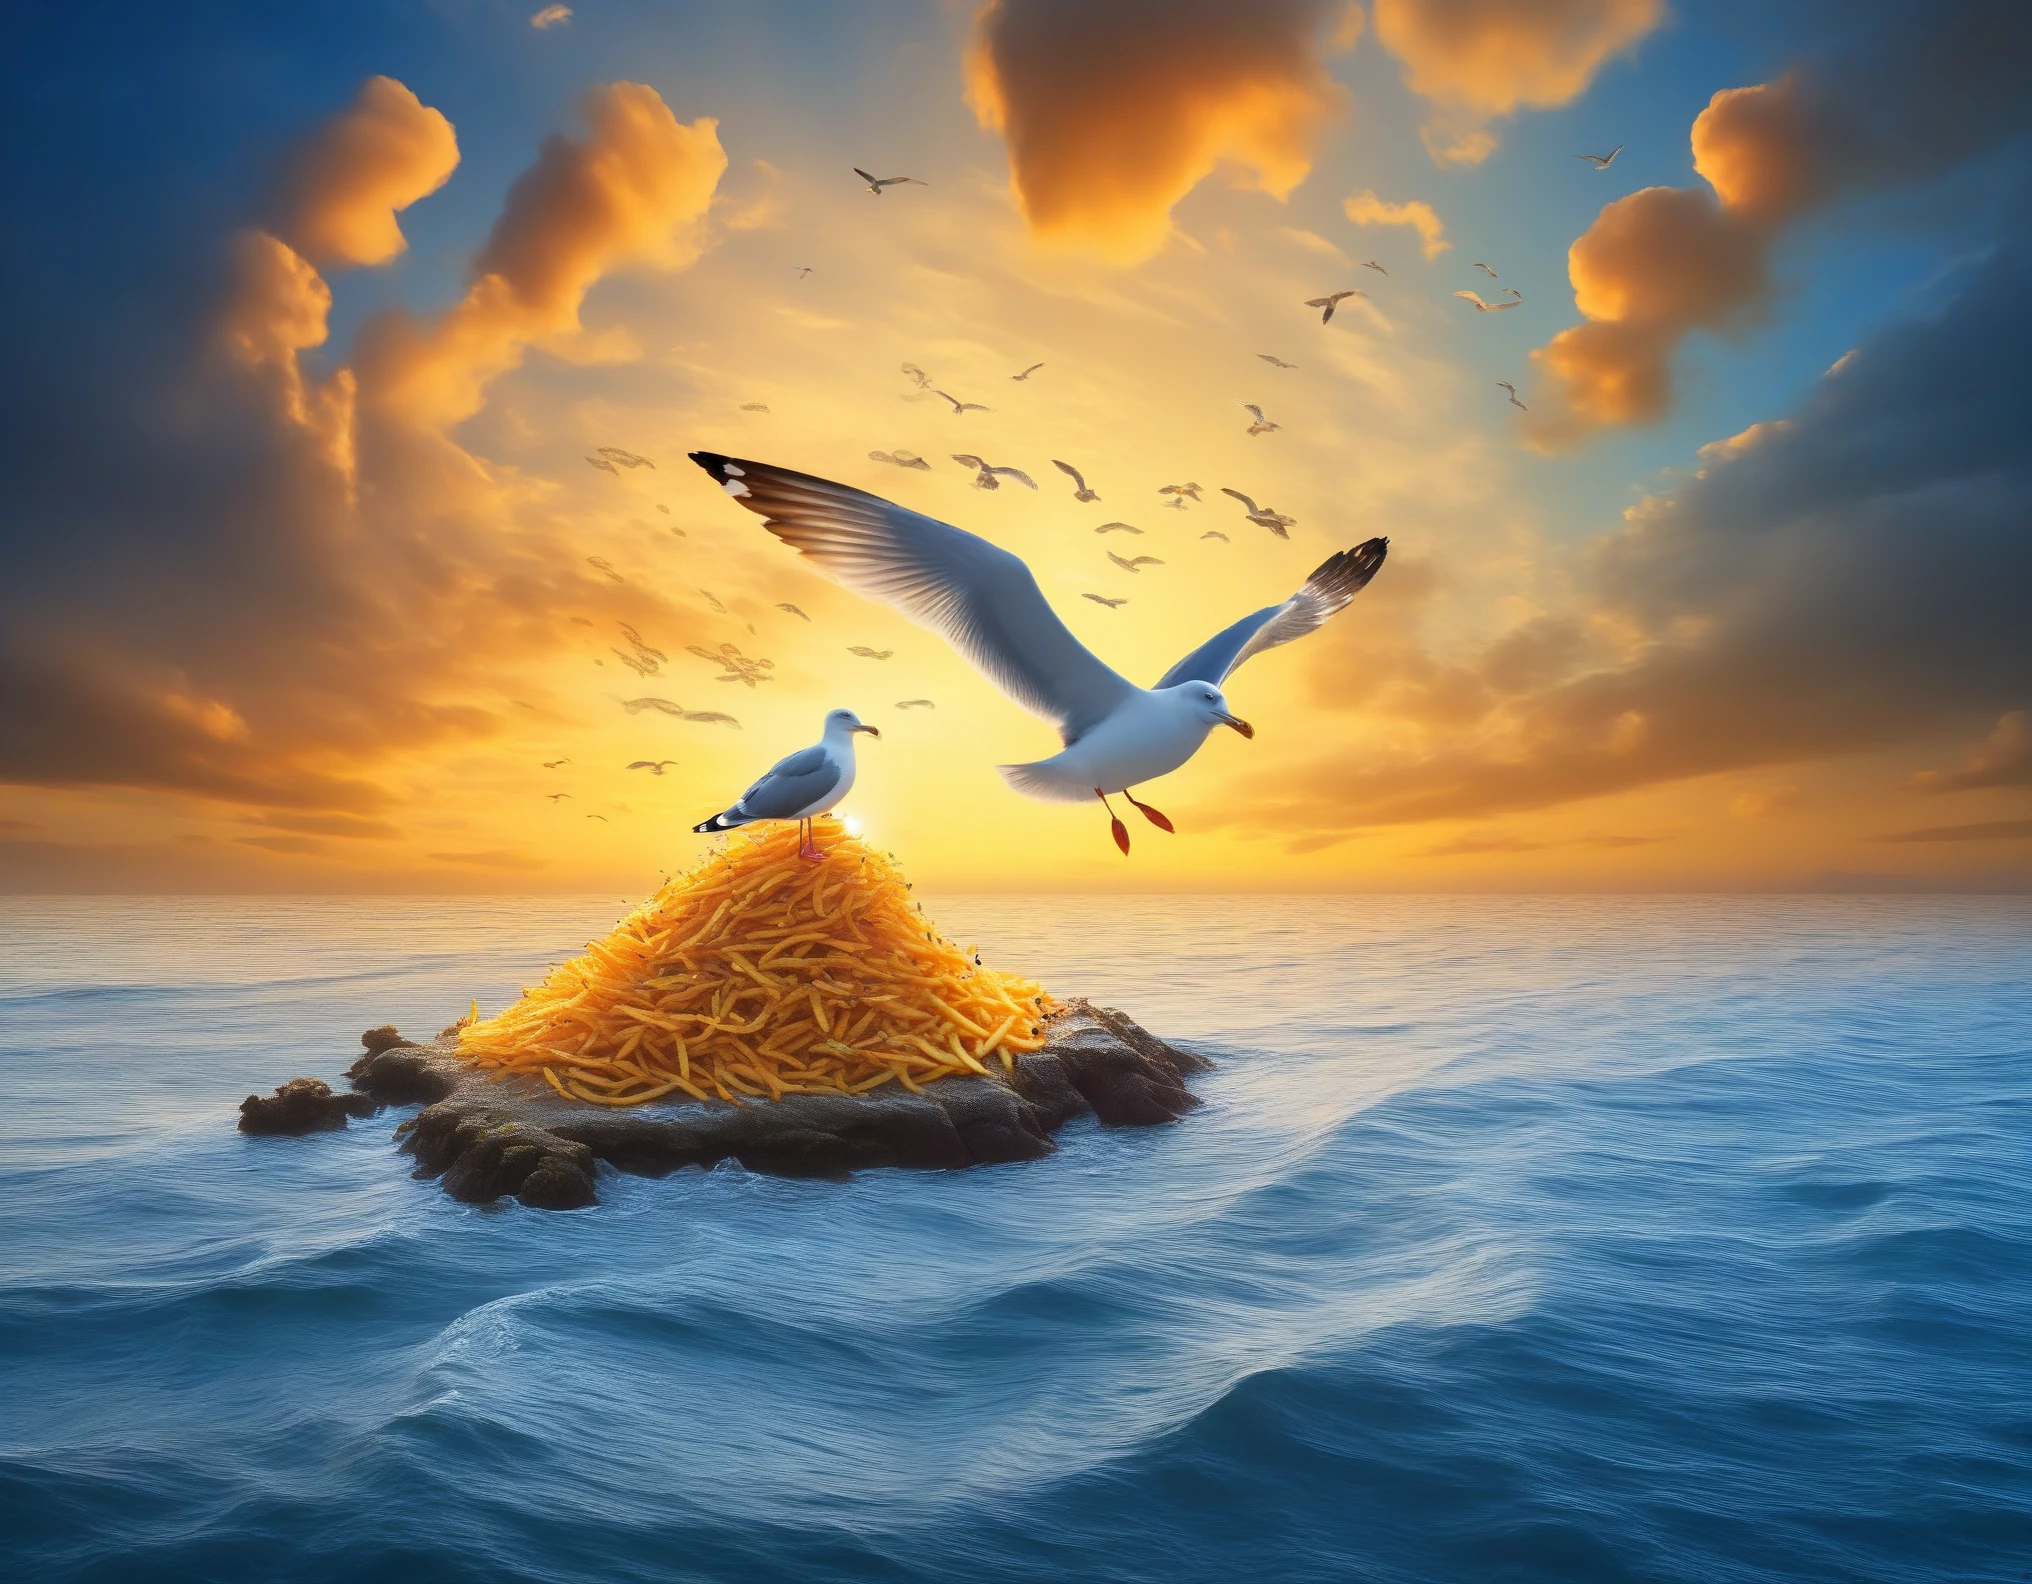 概念藝術, 小魚組成的小島, 海鷗和薯條, (嘴裡叼著小魚的海鷗), 日落, 漩渦雲, 神秘的天空, 用油來說明, 高對比度,